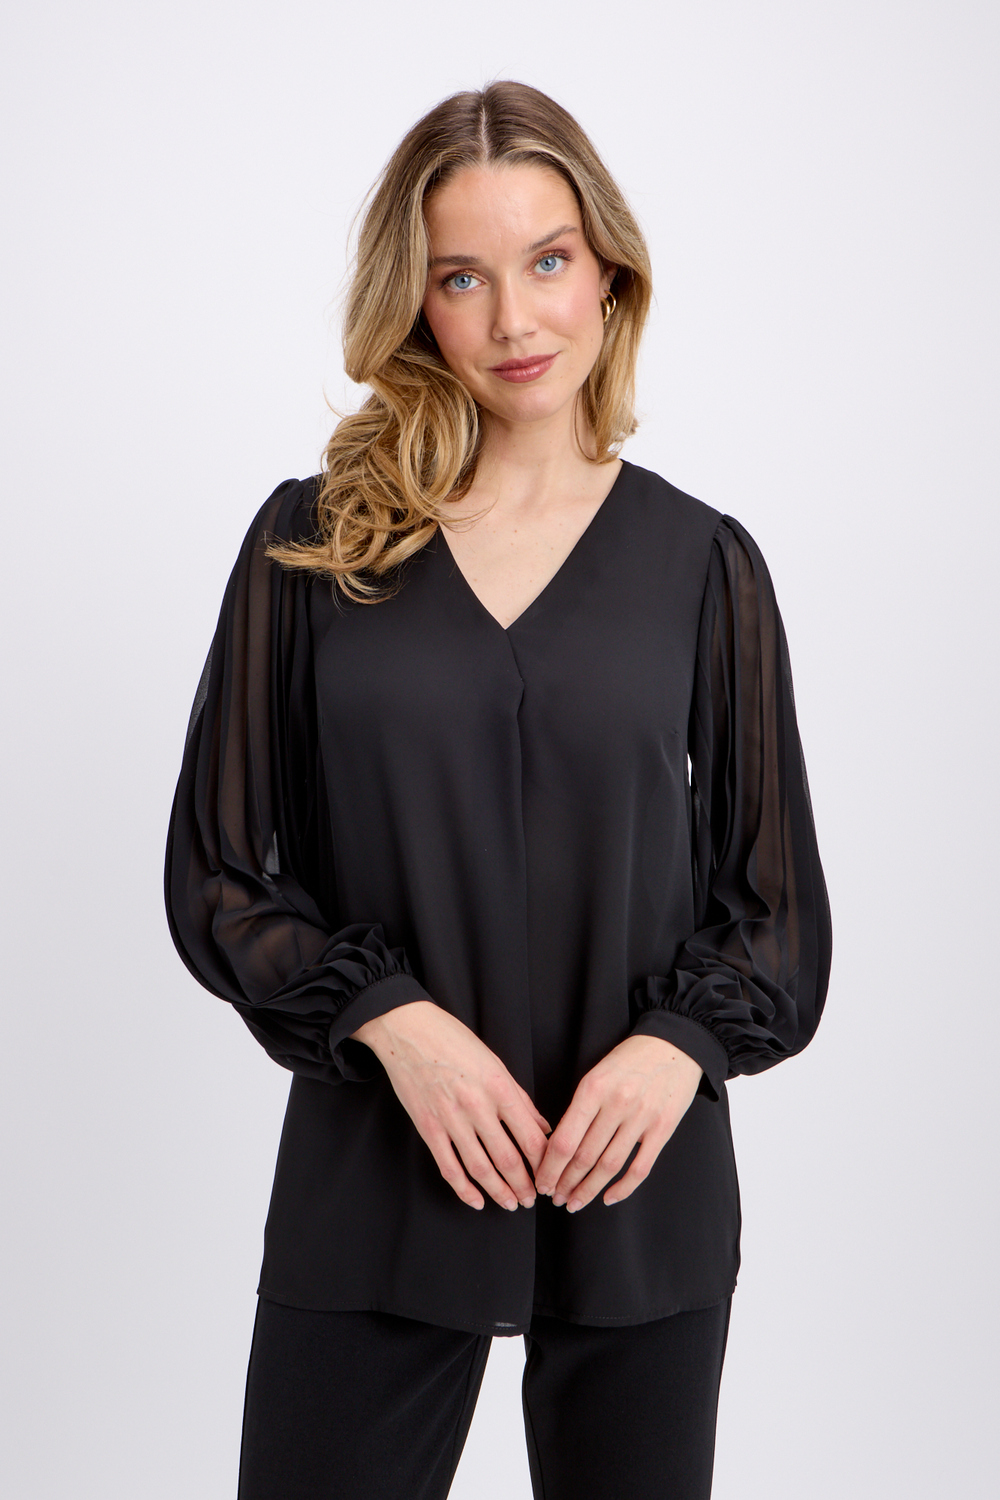 Pleated Sleeve Blouse Style 241173. Black